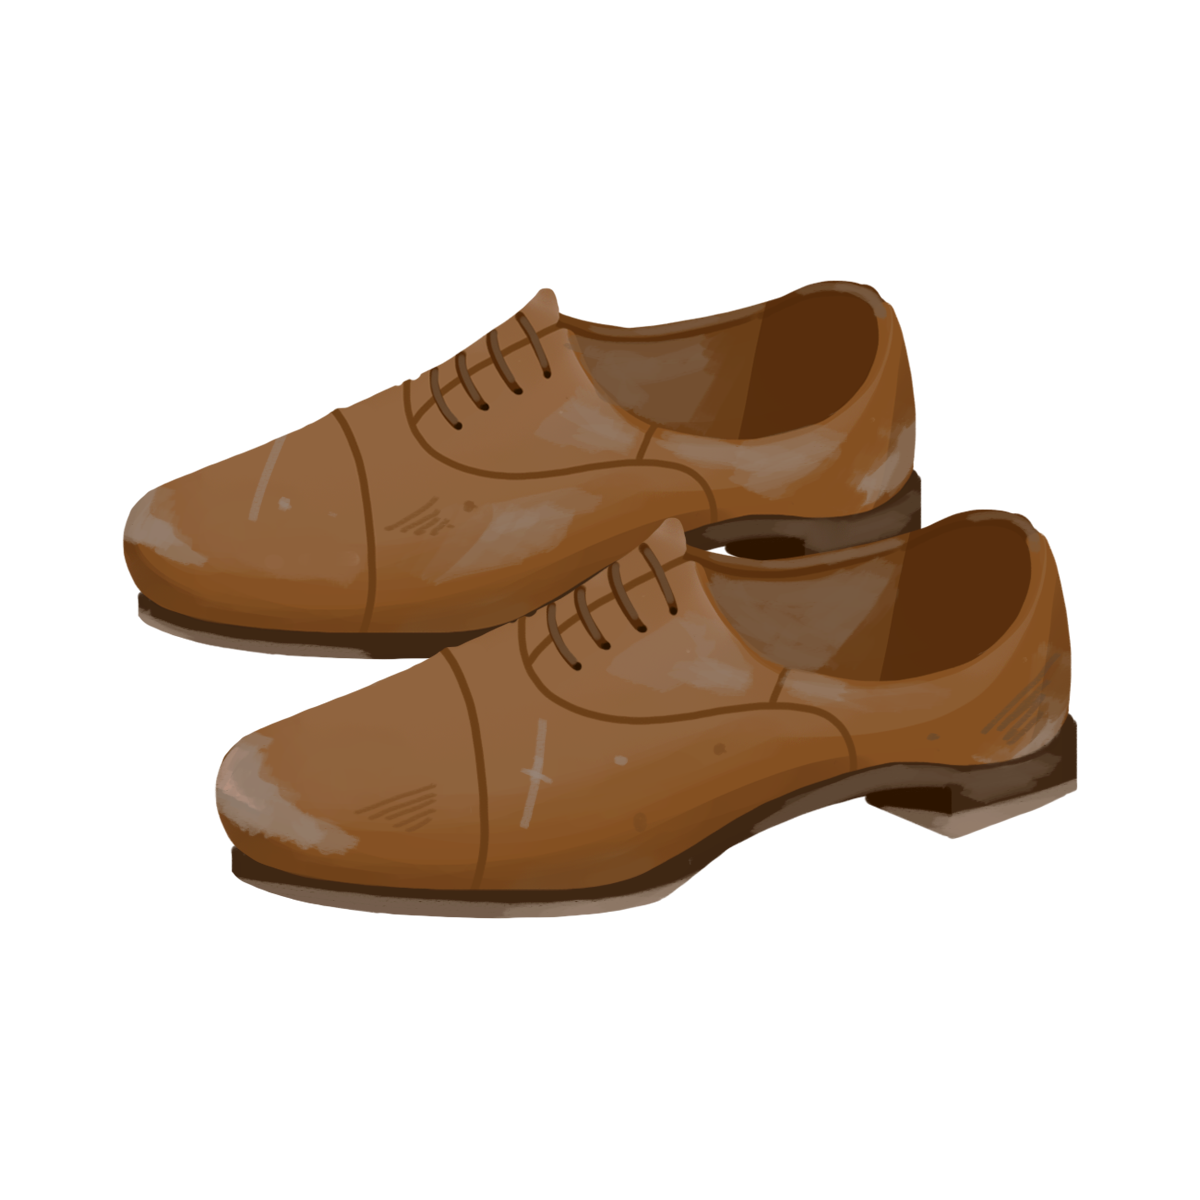 汚れた革靴のイラスト エコのモト